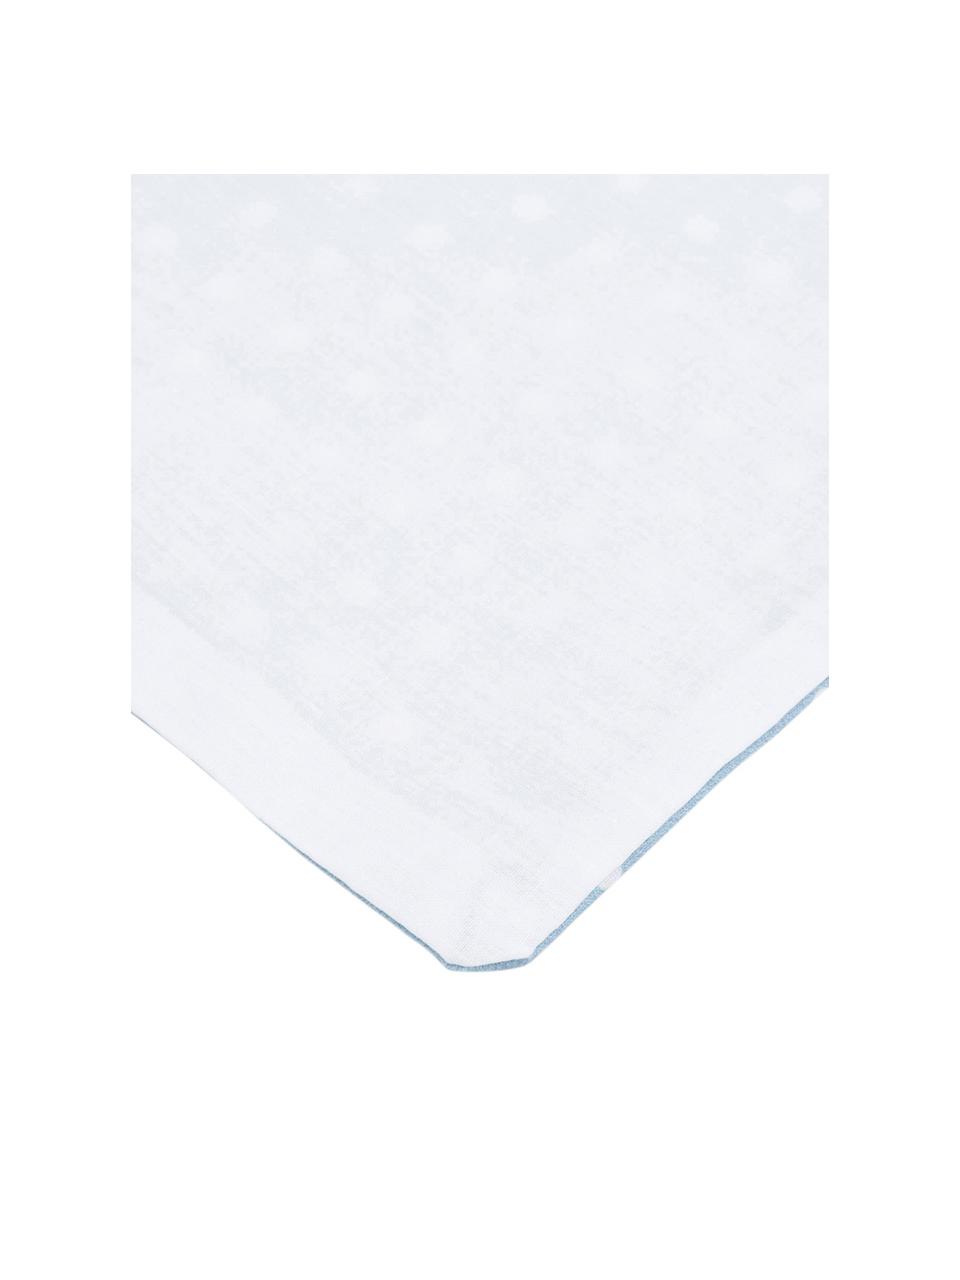 Parure copripiumino in cotone Perun, Cotone, Fronte: blu, bianco Retro: bianco, 200 x 200 cm